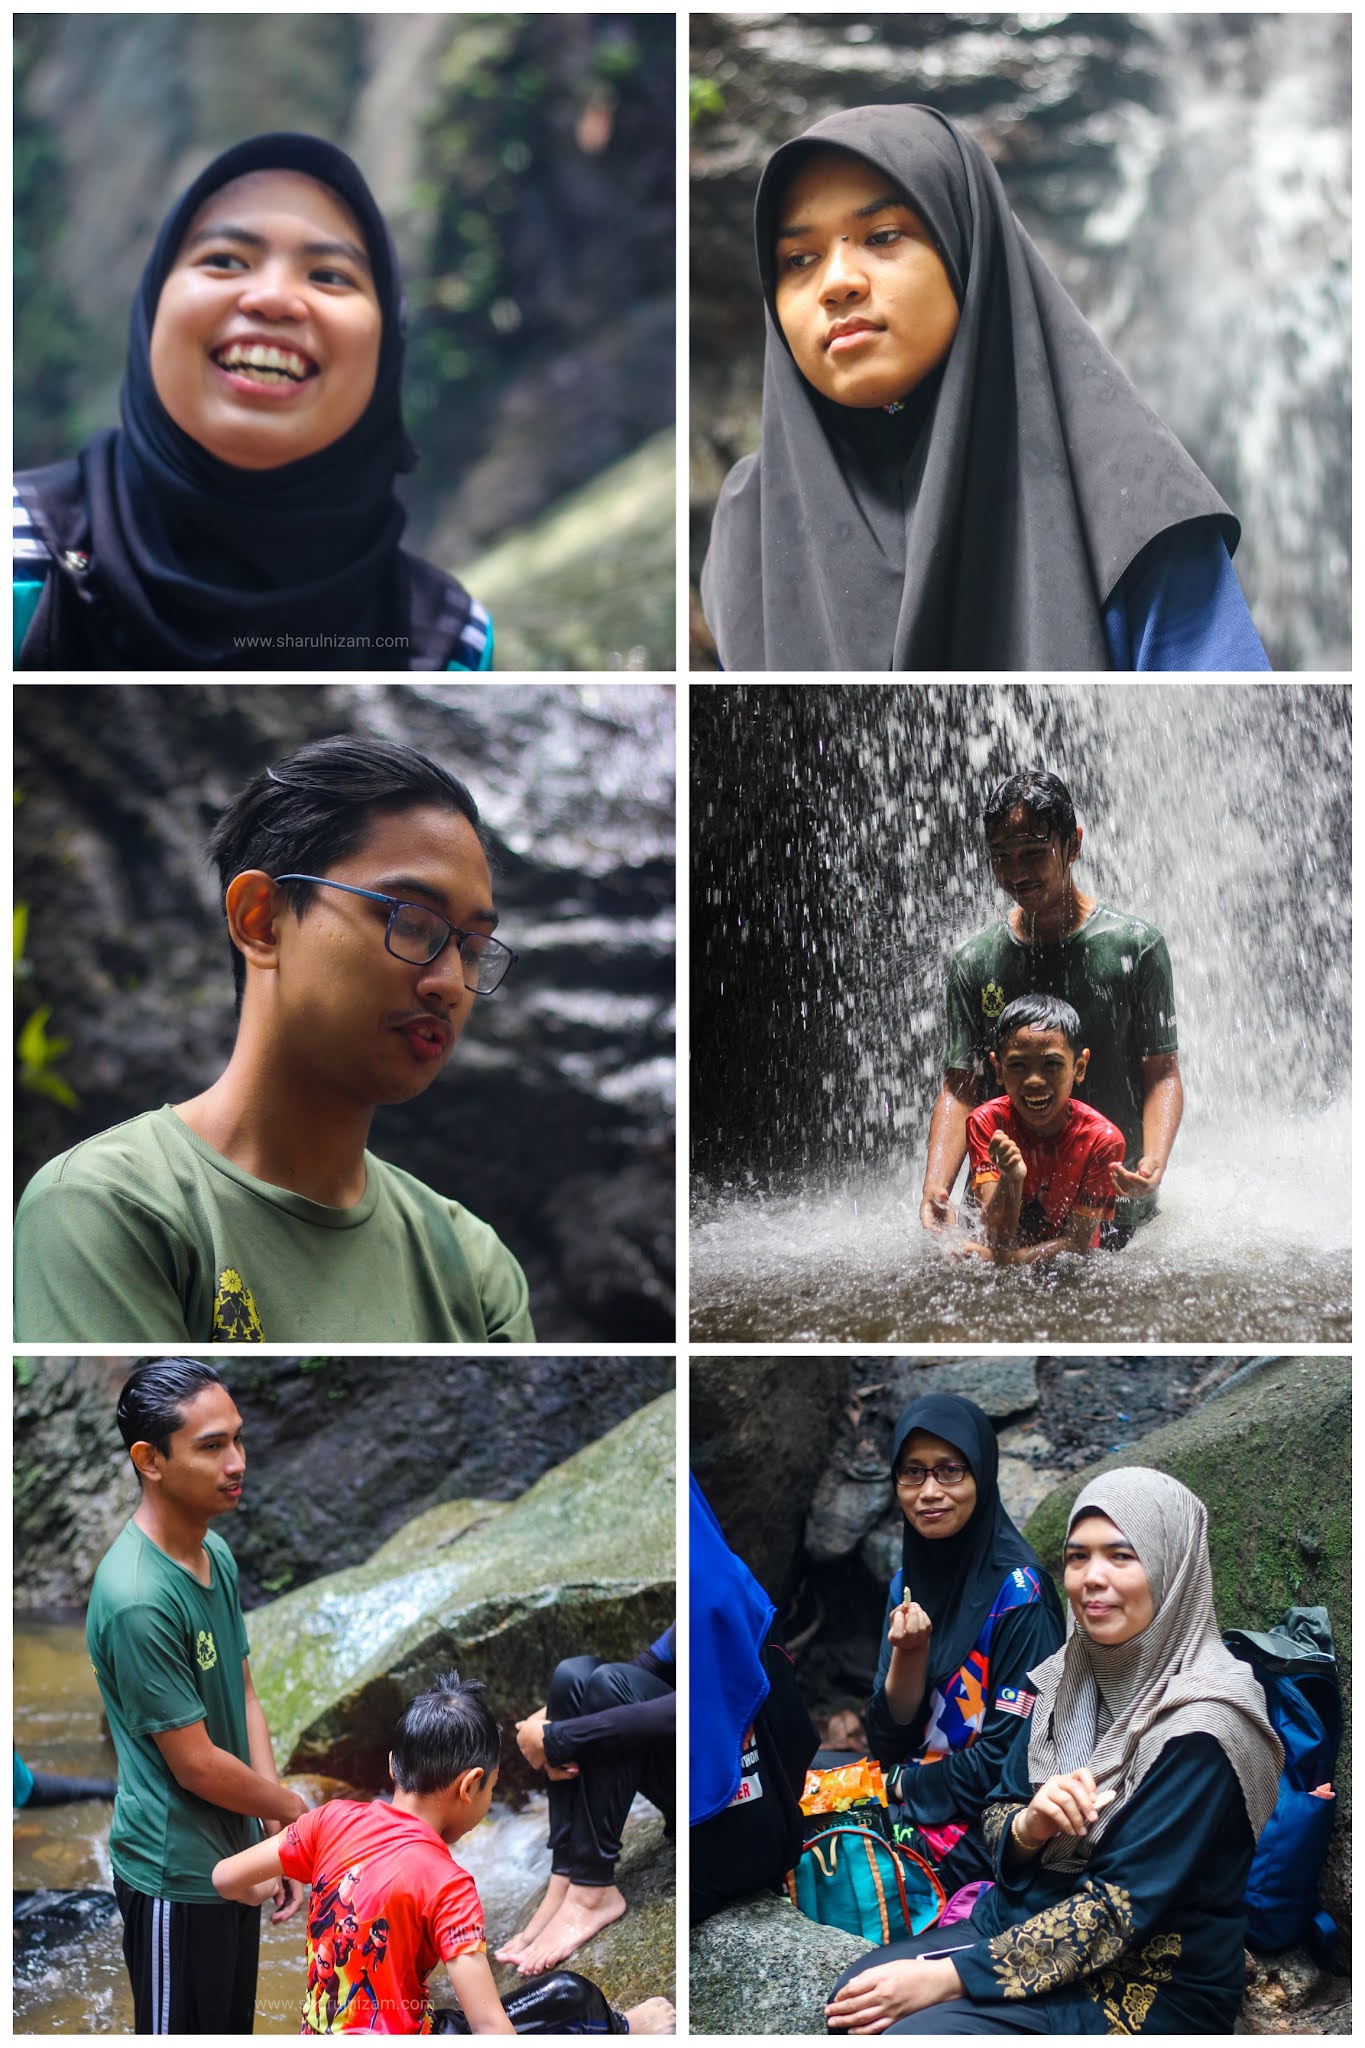 Trekking Ke Air Terjun Sungai Pisang, Gombak Bersama Keluarga